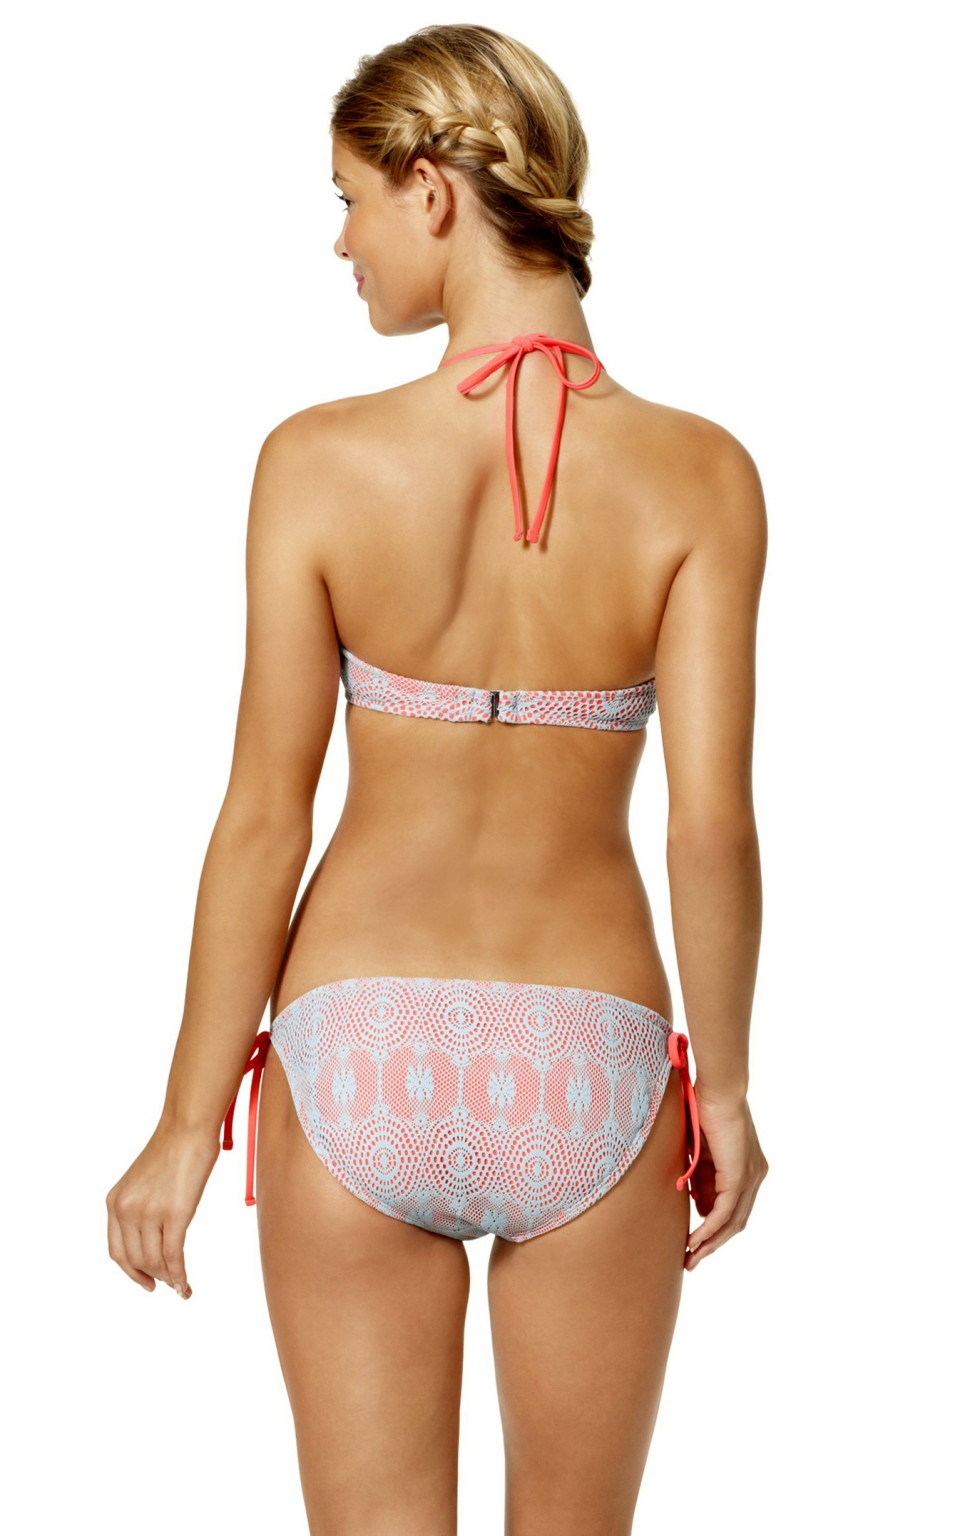 Danielle Knudson posing in sexy Target bikini 2015 collection #75168940